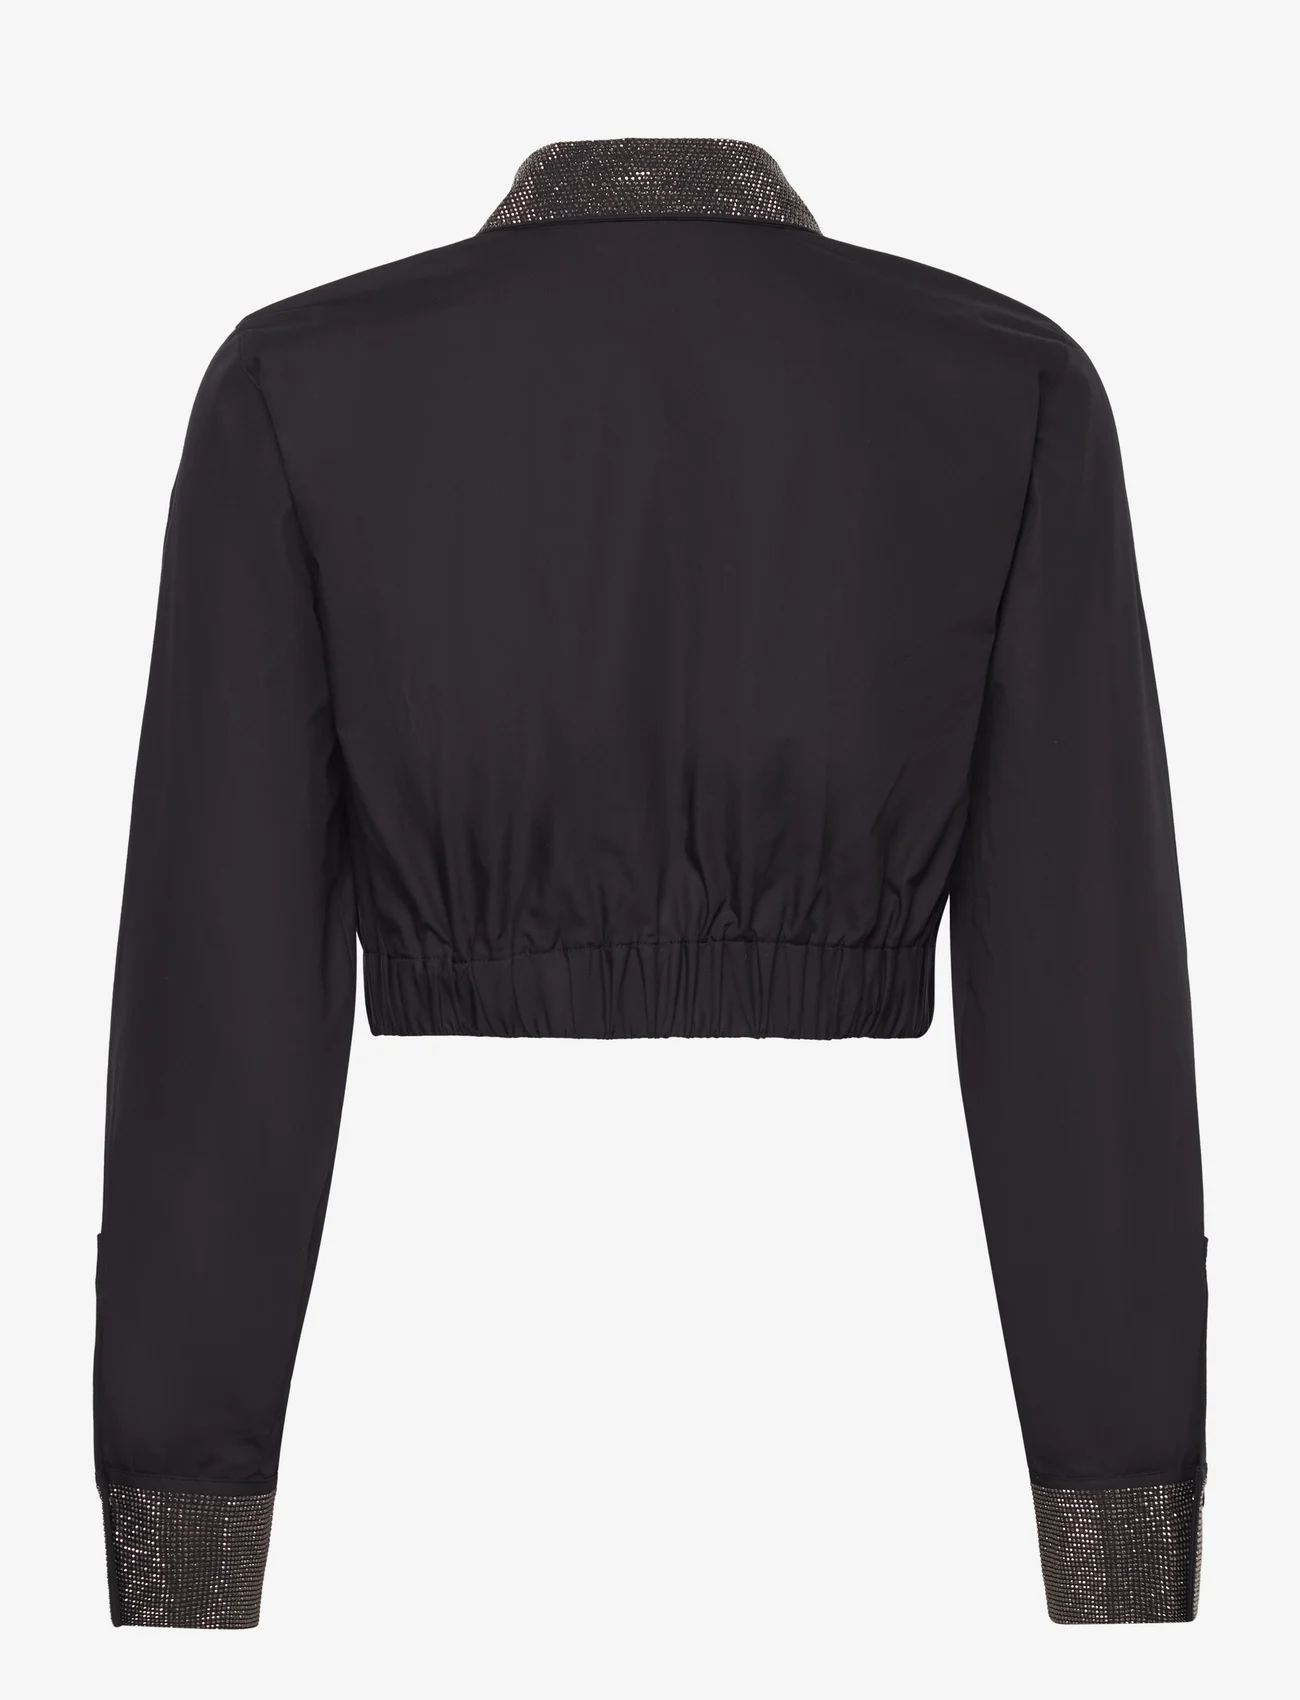 Karl Lagerfeld - rhinestone cropped shirt - pitkähihaiset paidat - black - 1